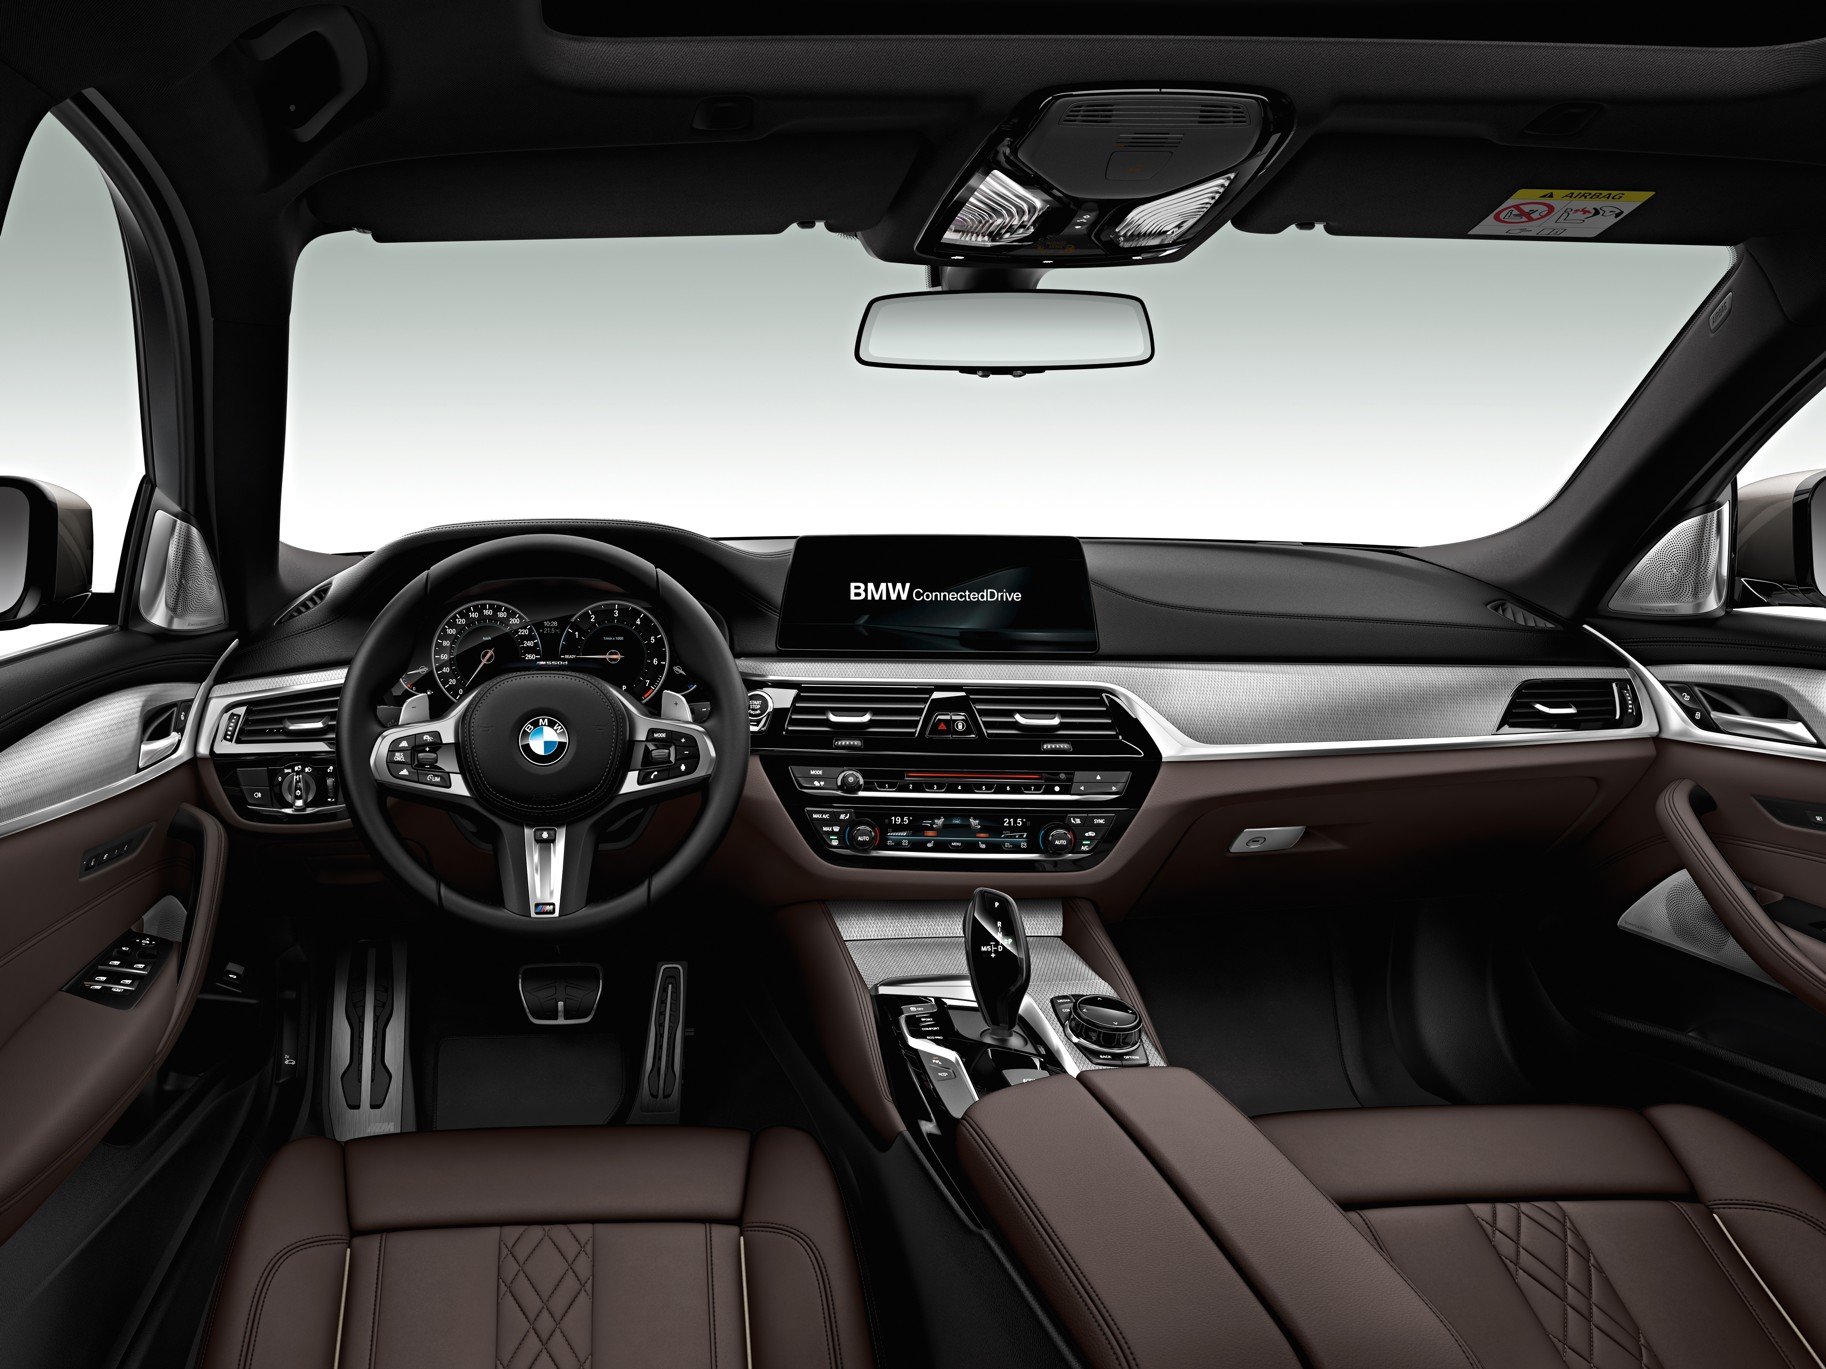 BMW M550d xDrive na semaforu raději nedráždit! Jeho šestiválcový turbodiesel je aktuálně nejsilnějším na trhu. Disponuje výkonem 400 koní při 4 400 otáčkách za minutu a točivý moment činí rovných 760 Nm